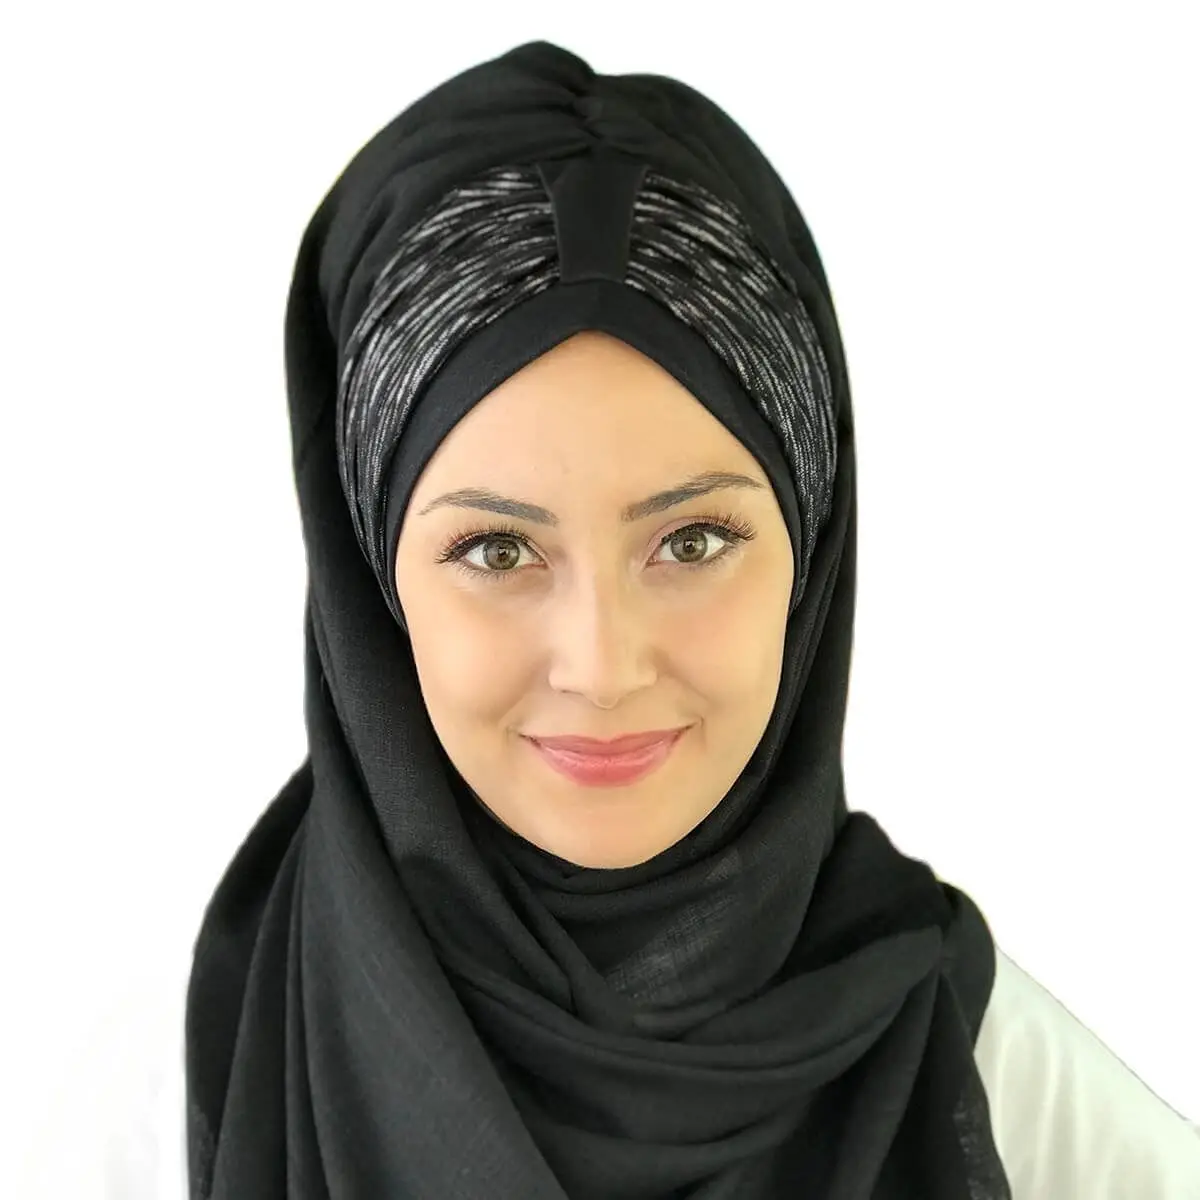 

Новый модный исламский мусульманский хиджаб 2021 трендовая одежда хиджаб готовая шаль шапка шарф с пряжкой шифоновый берет Koton черный хиджаб ...